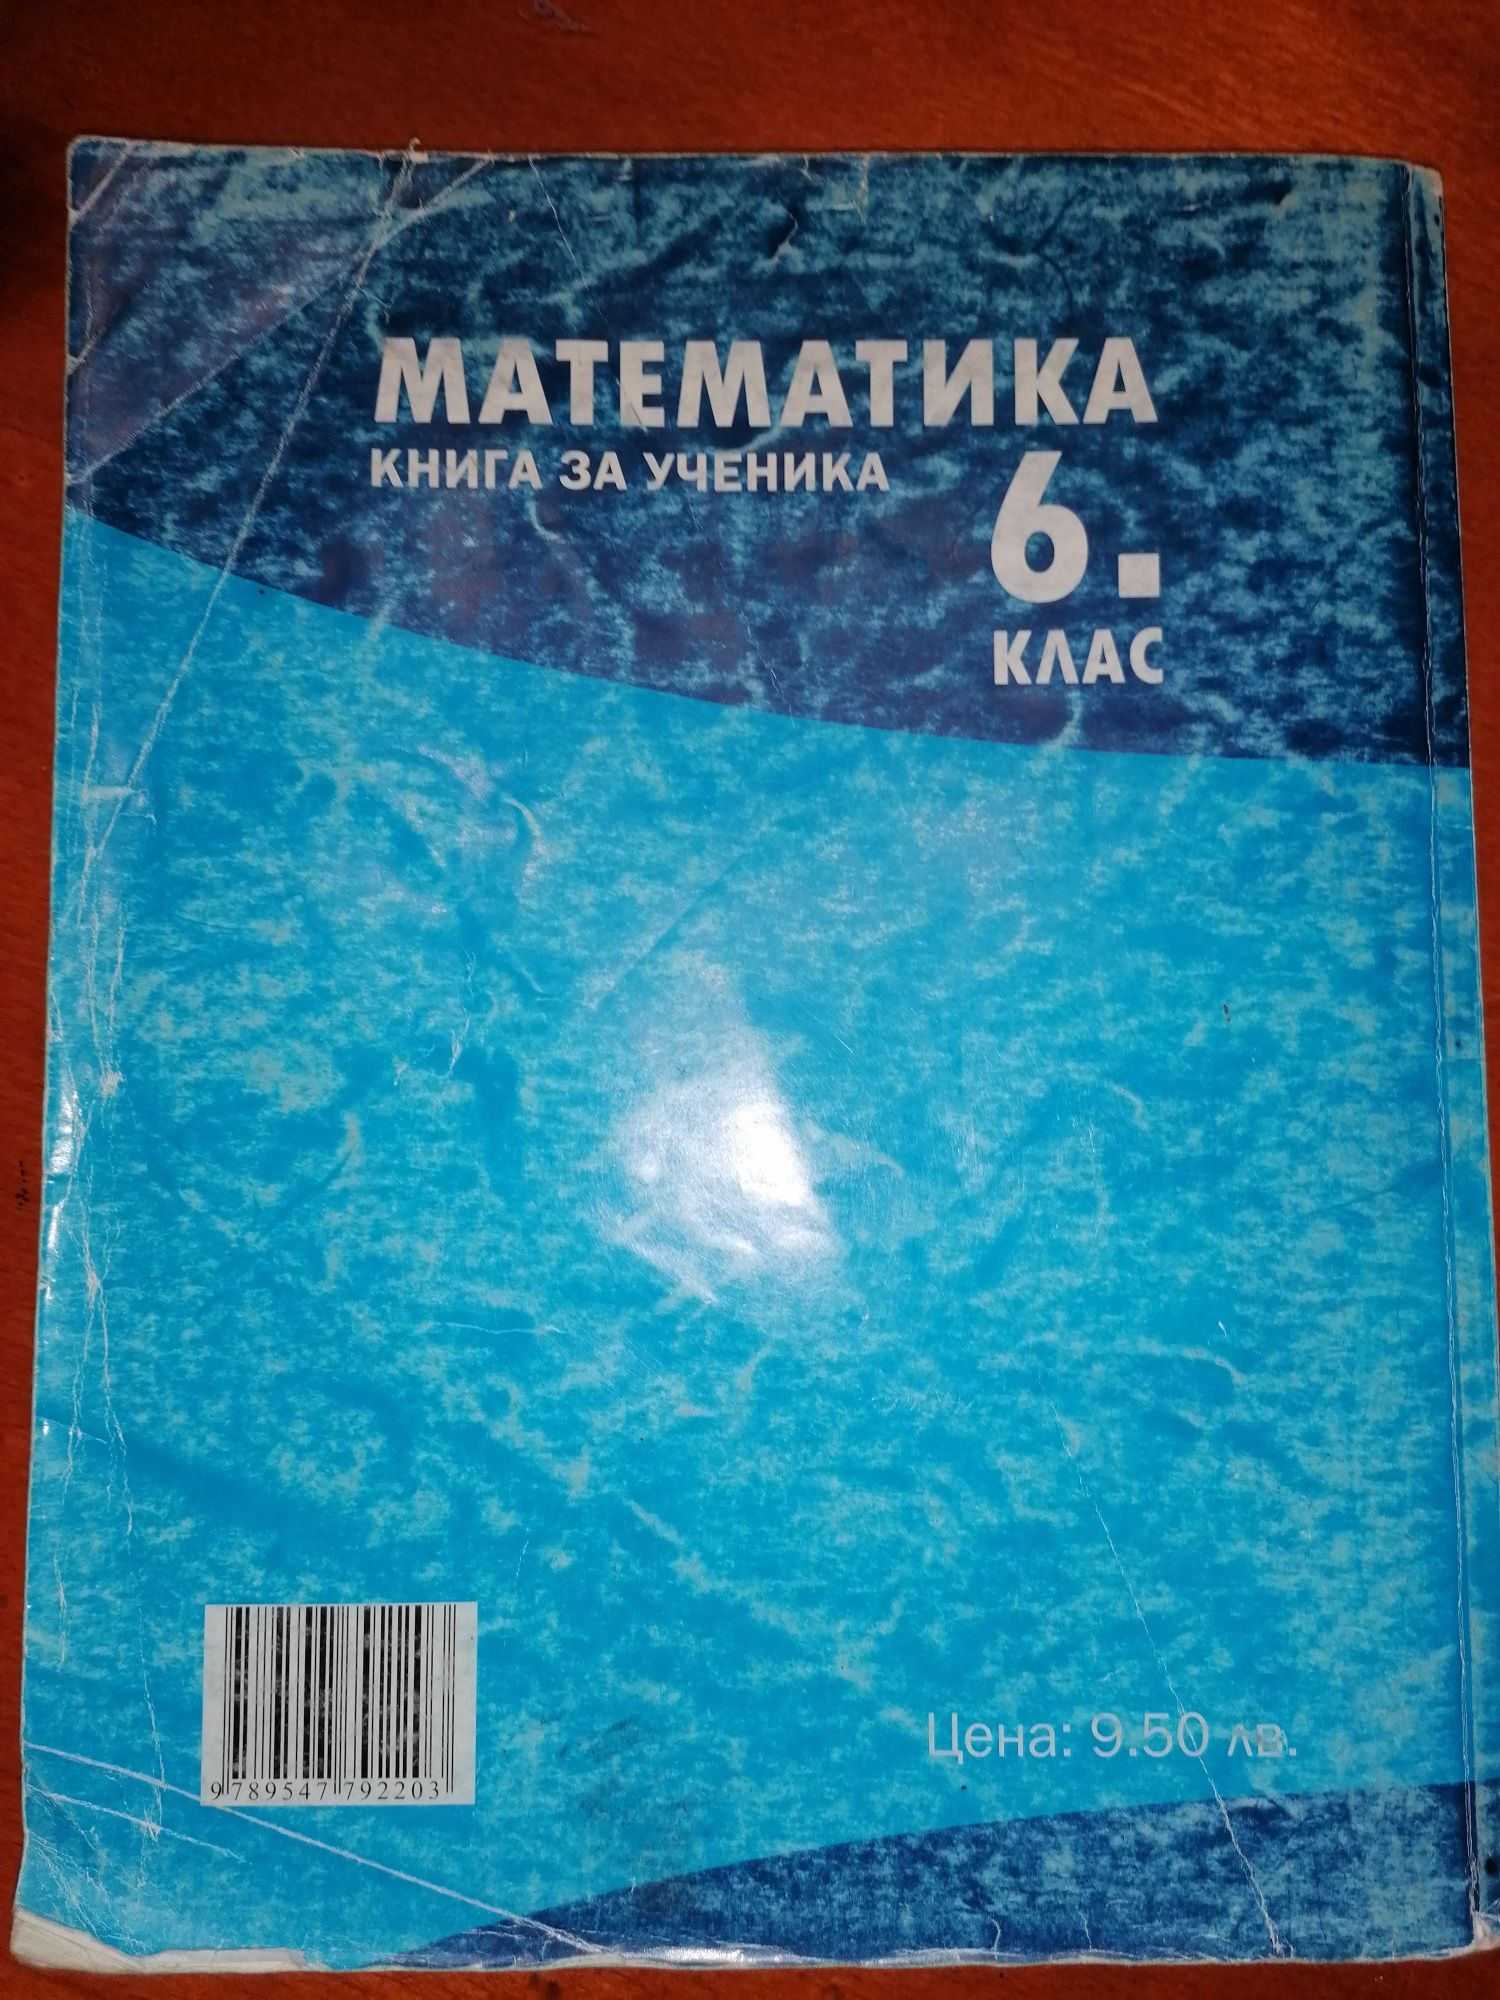 Математика книга за ученика